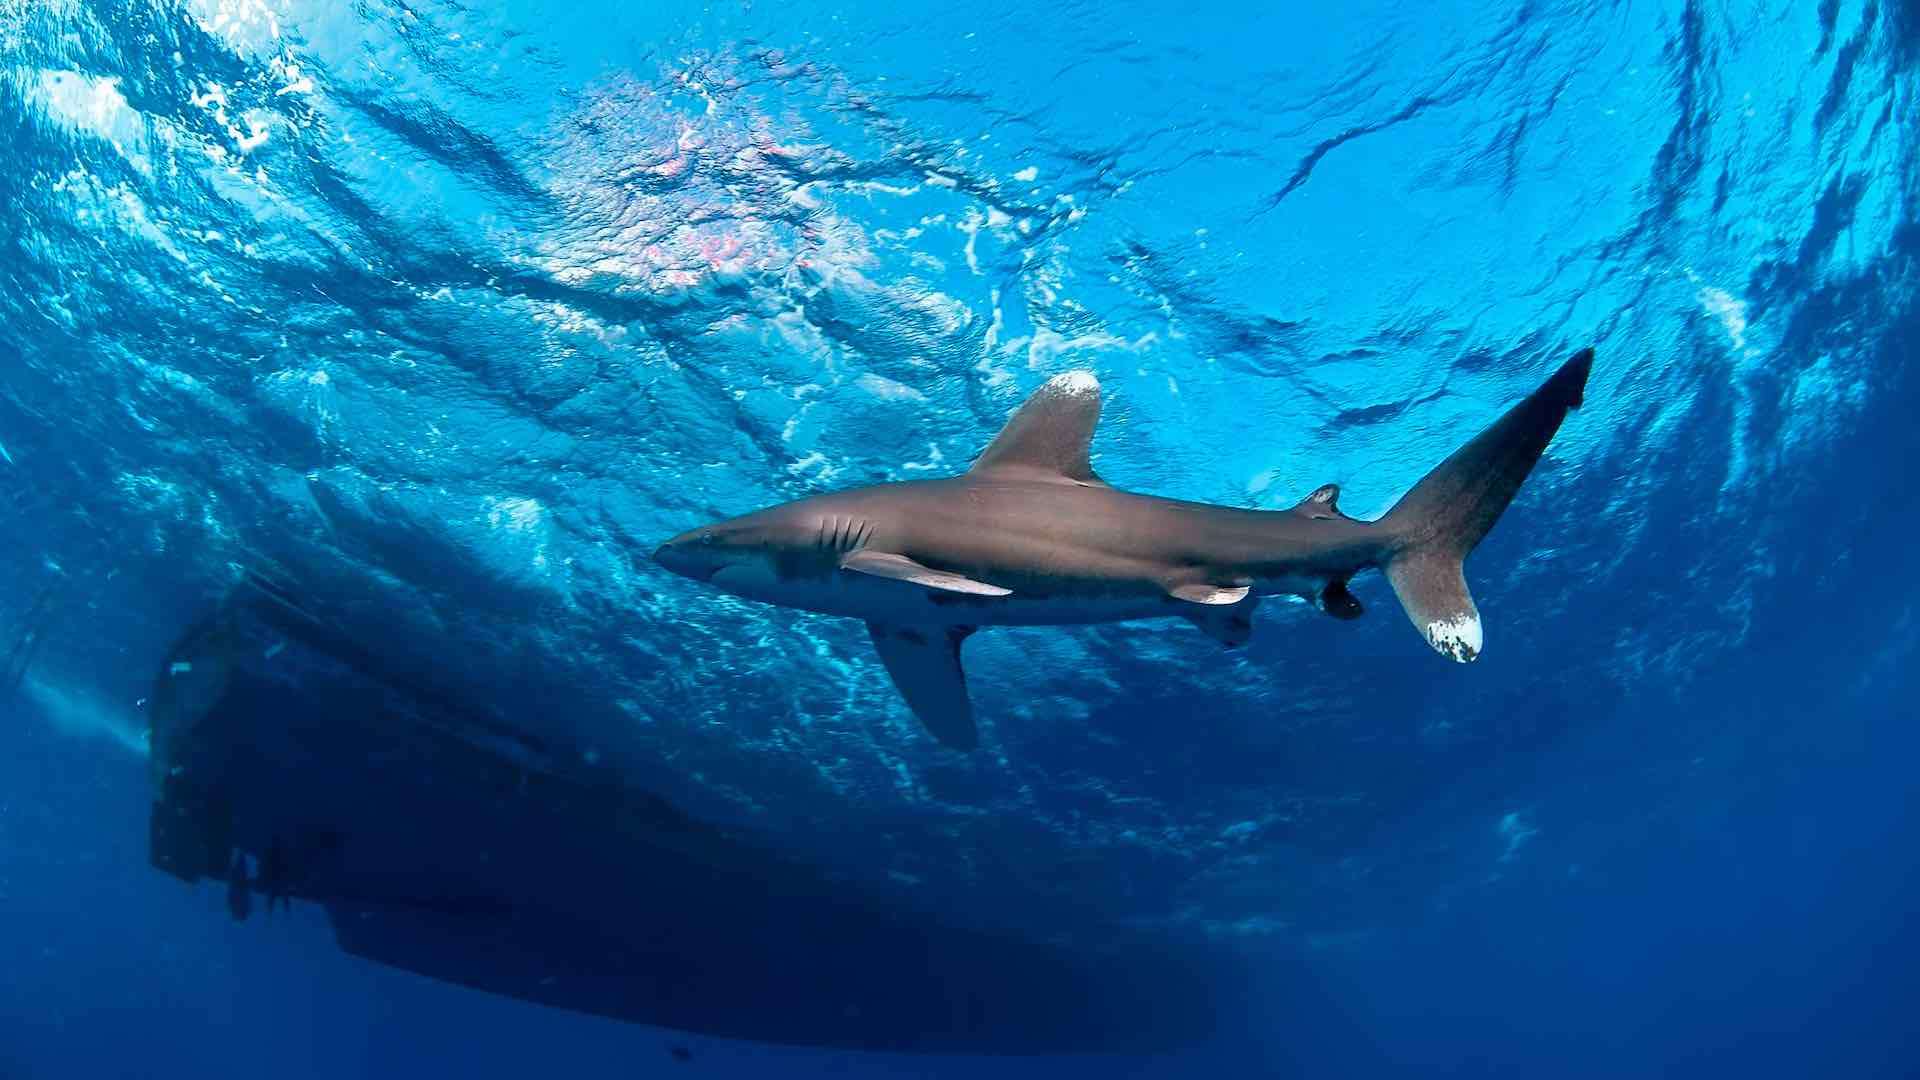 Fishermen find remains of missing man inside shark in Argentina